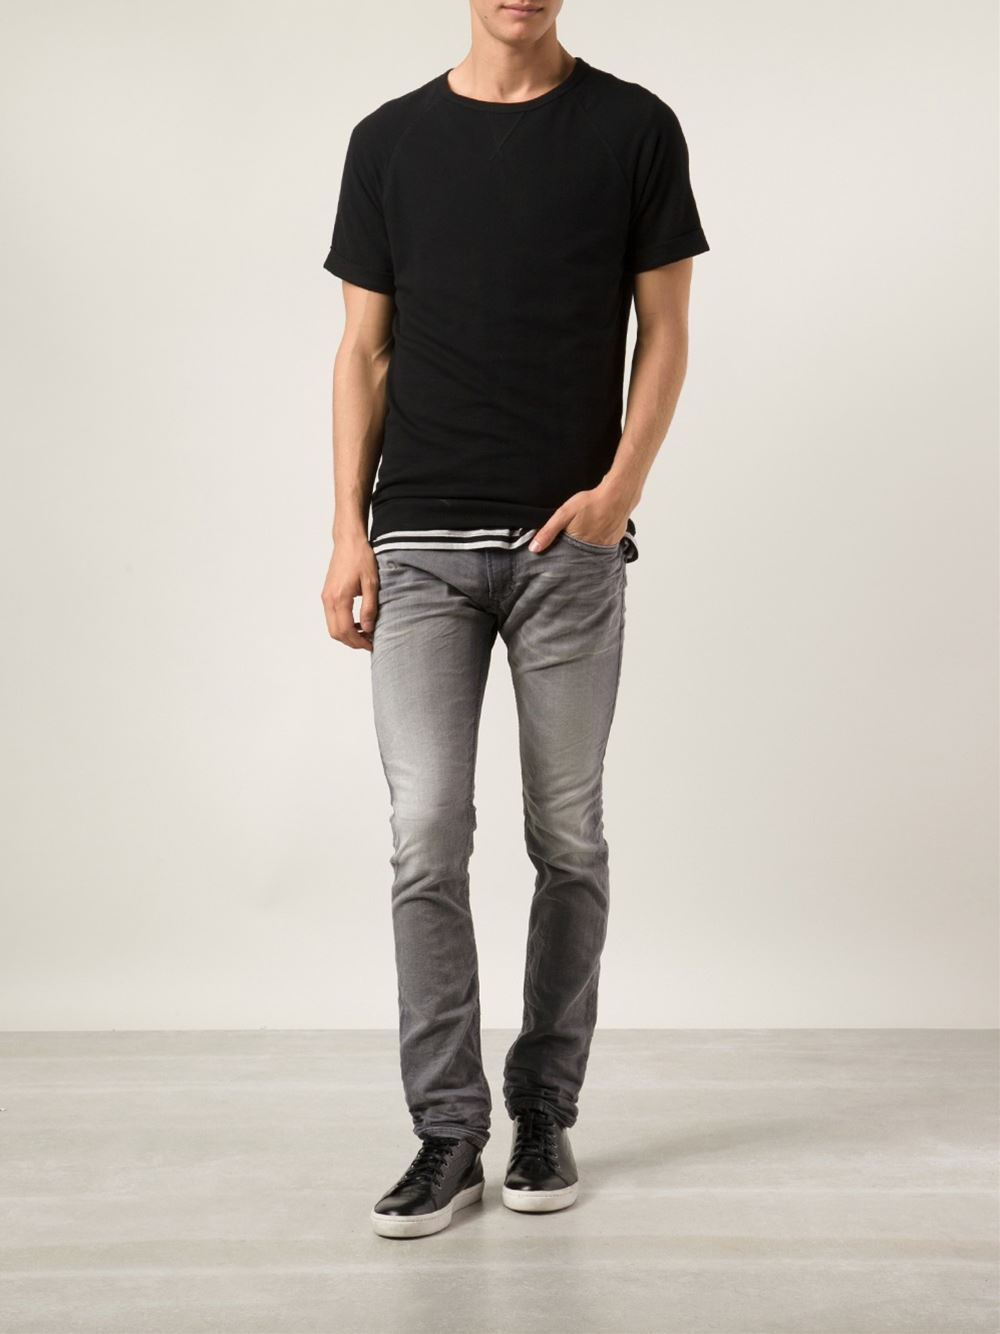 Lyst - Diesel Thavar Sweat Jeans in Gray for Men